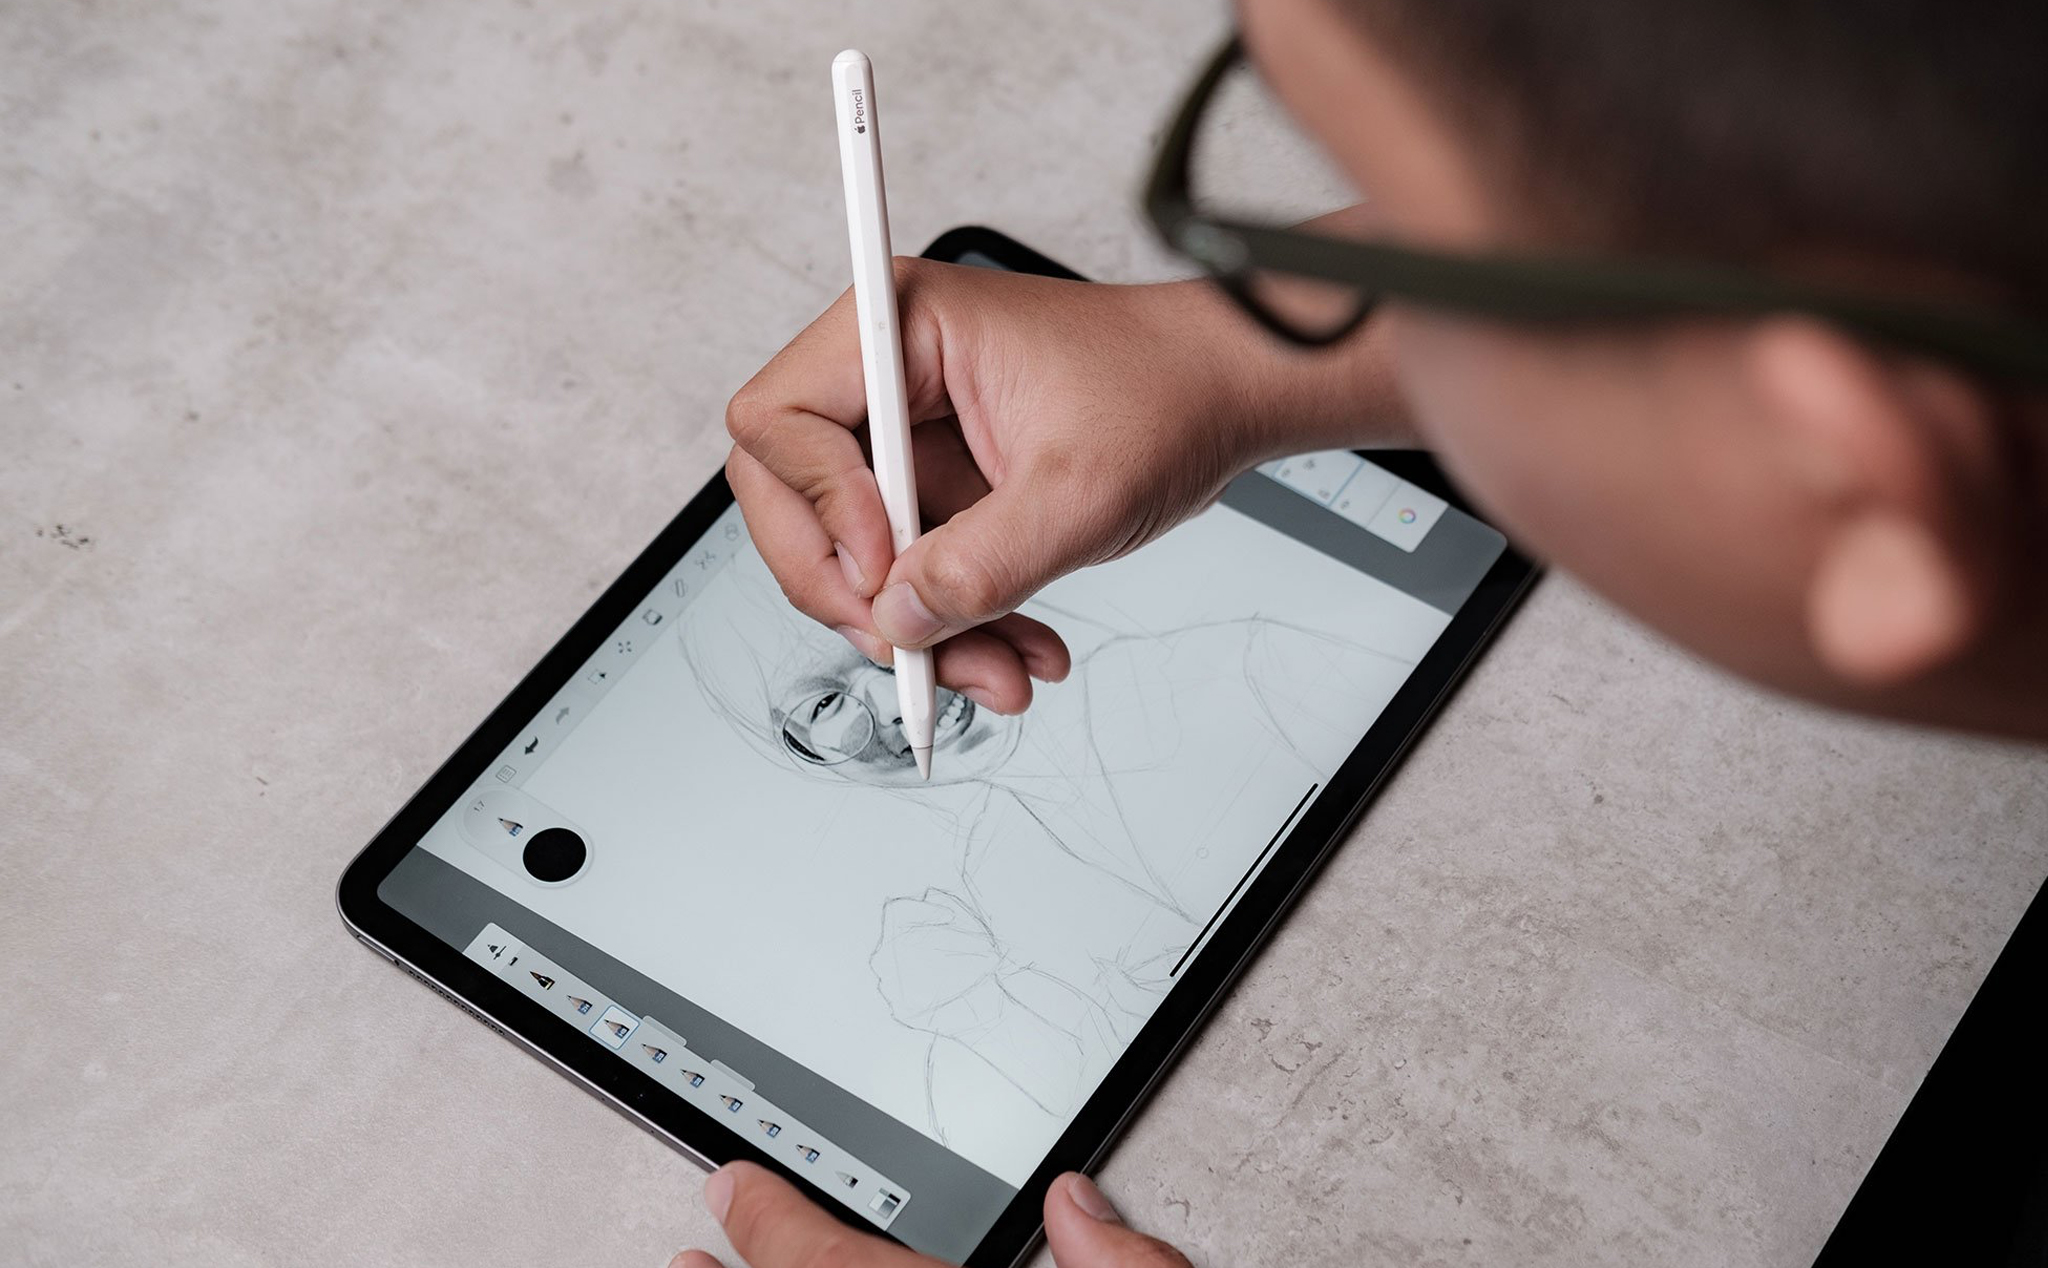 Tận hưởng sự chân thực cùng Apple Pencil và iPad khi vẽ trên màn hình retina của chúng. Với mỏng nhẹ và dễ thuận tiện cầm nắm, Apple Pencil là người bạn tuyệt vời của những người yêu thích nghệ thuật.